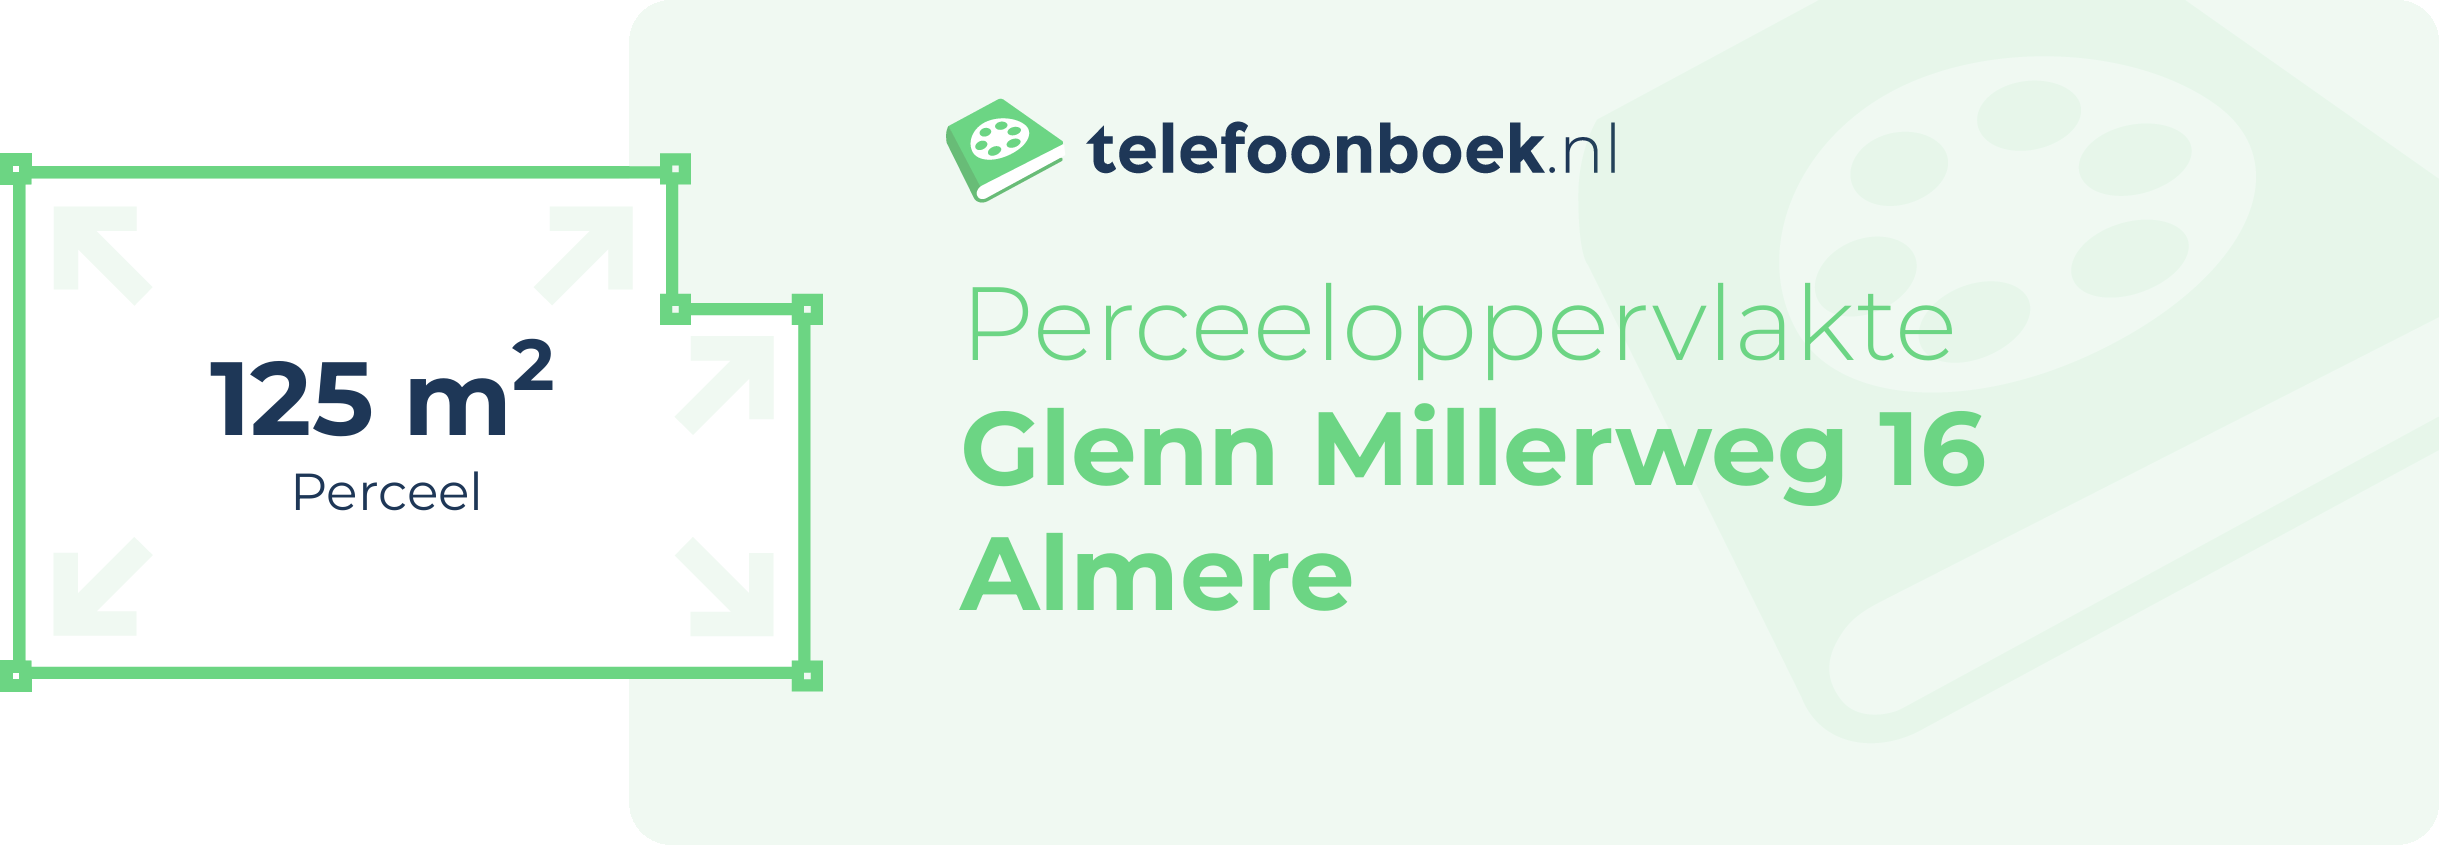 Perceeloppervlakte Glenn Millerweg 16 Almere